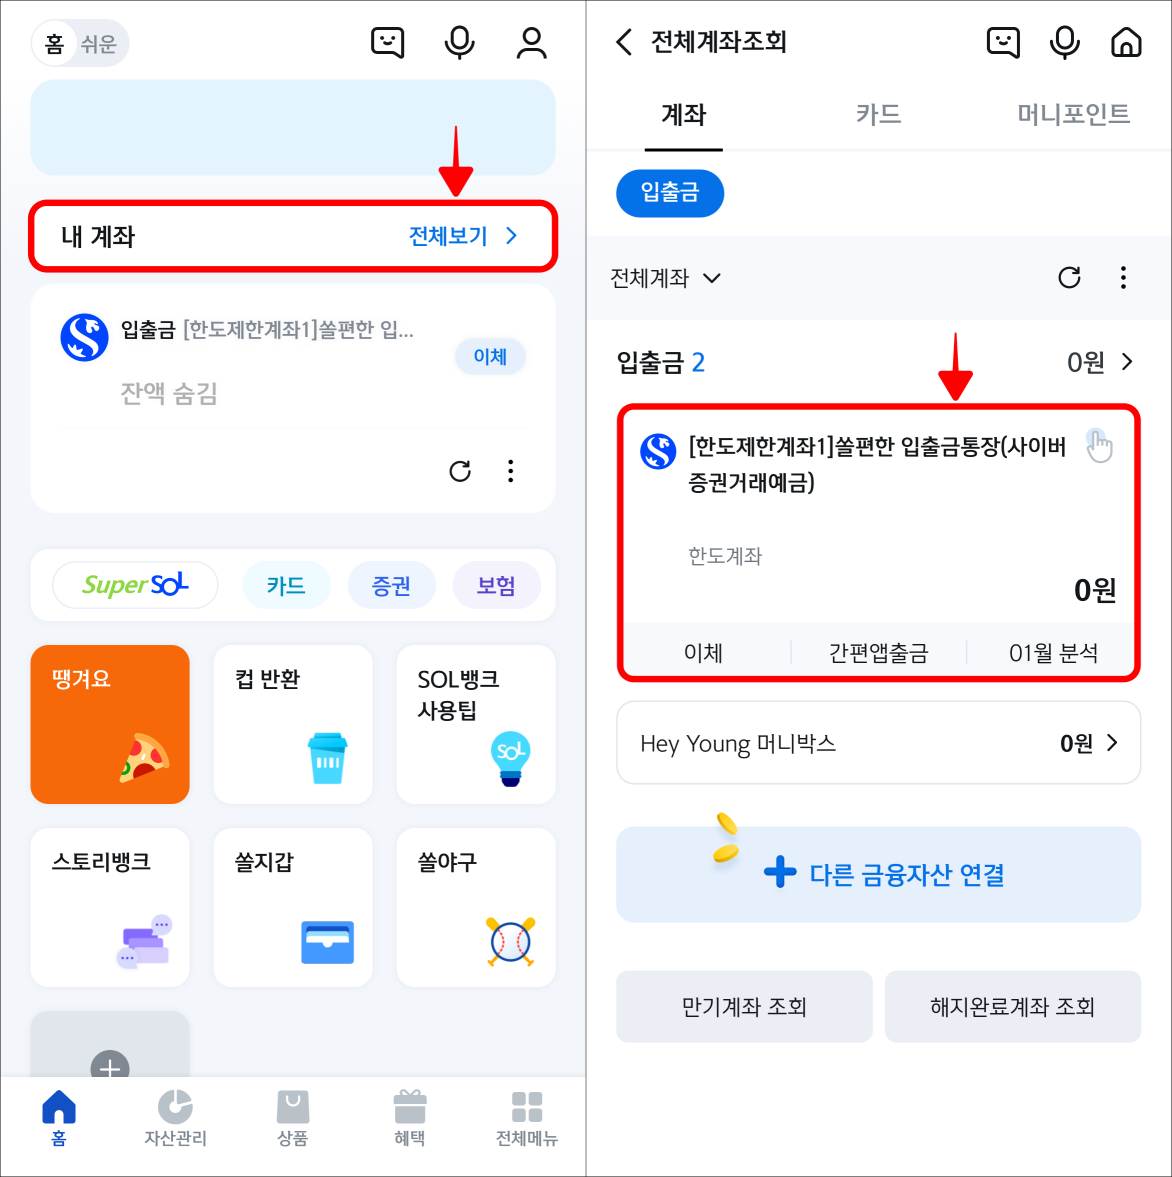 신한 쏠 앱의 홈 화면에서 내 계좌를 선택하고 조회되는 계좌를 선택